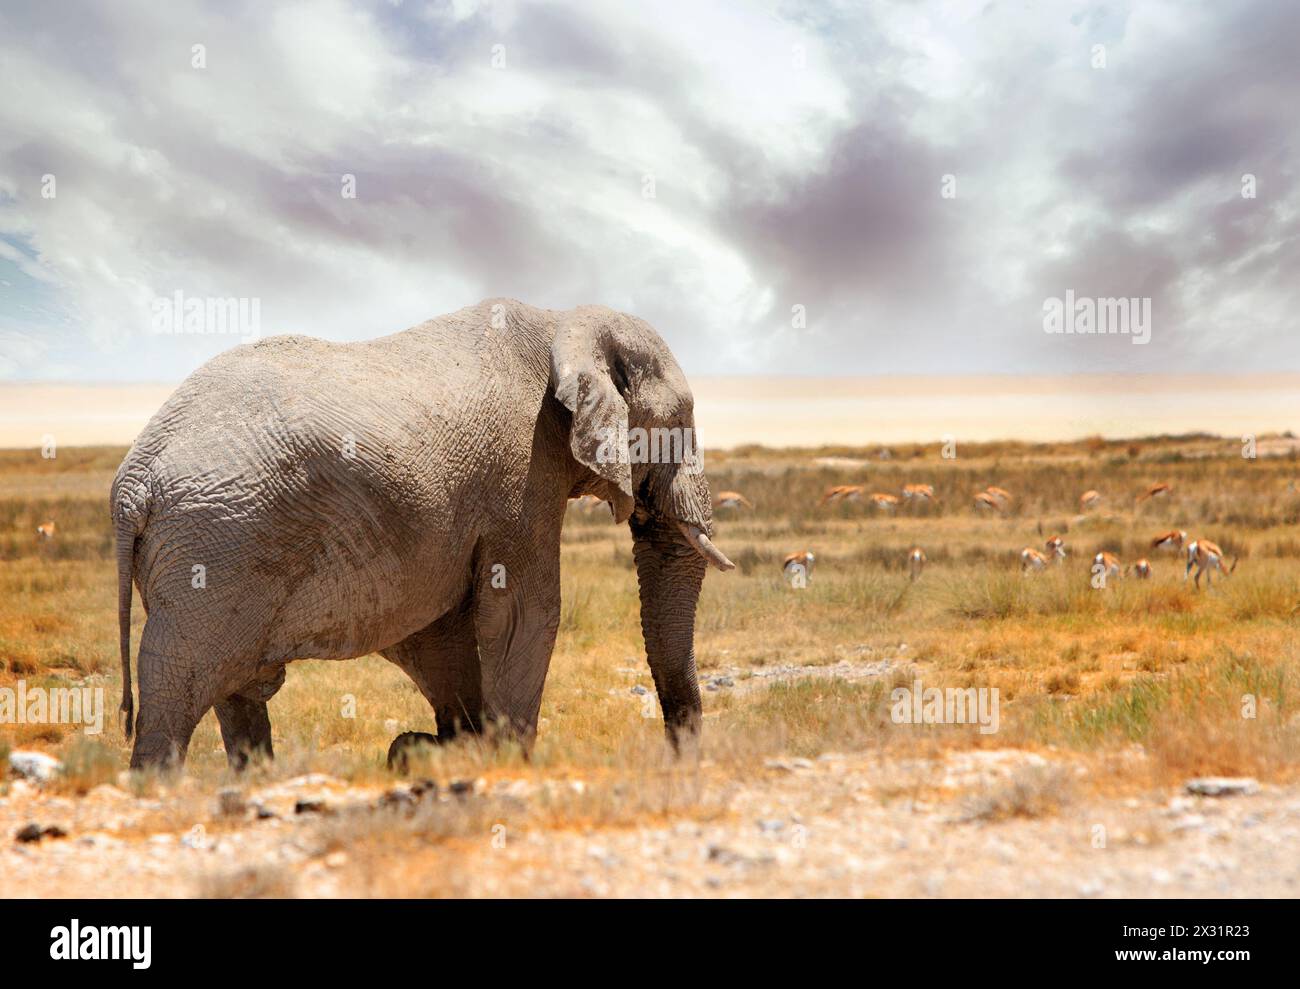 Geisterelefant von Etosha - das liegt an der hellen Farbe des Elefanten und der Umgebung. Stockfoto